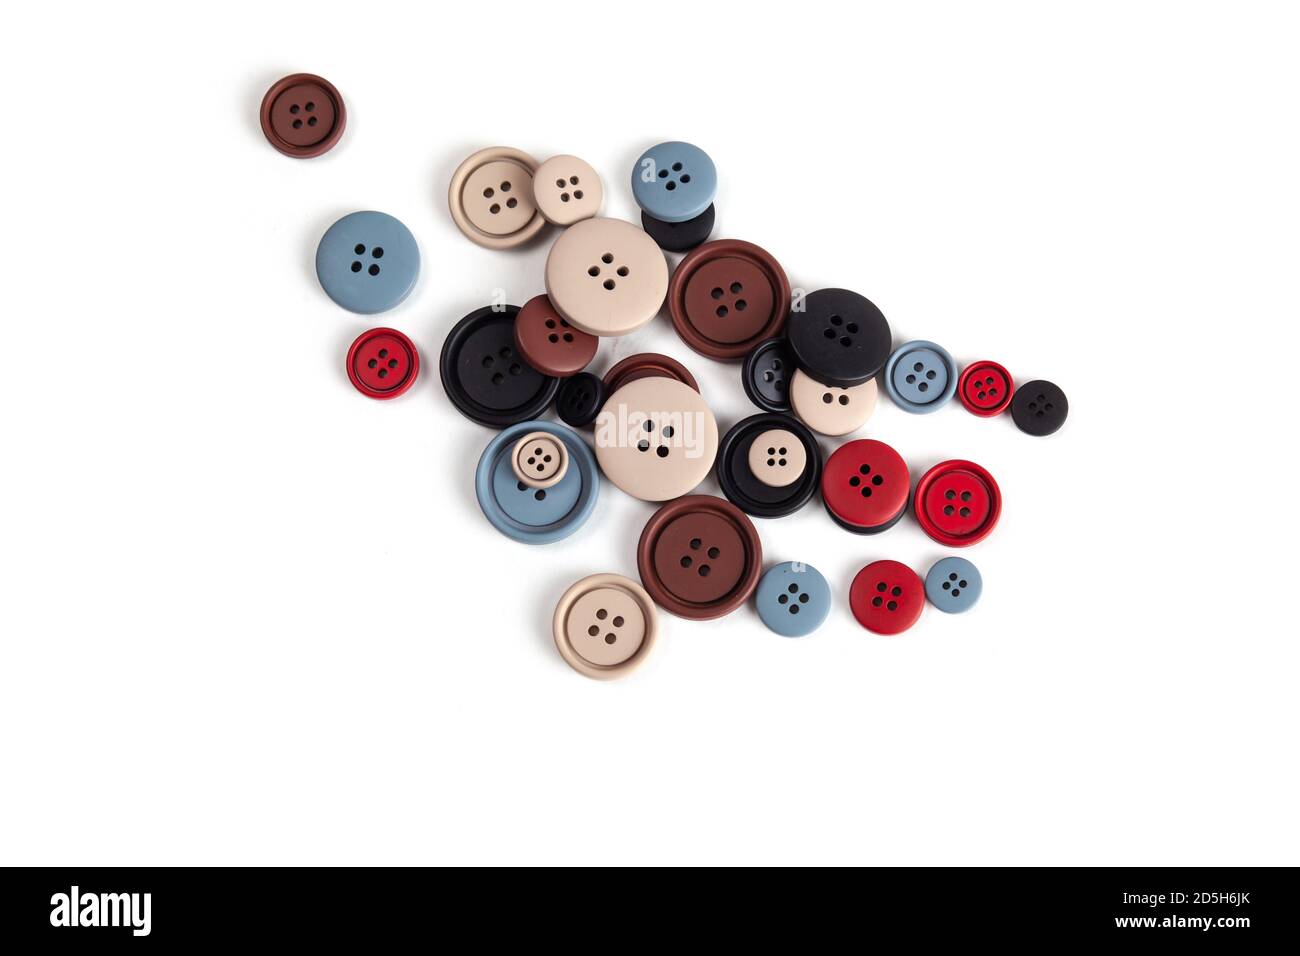 Pila de botones de color marrón, beige, gris, rojo, negro de plástico mate sobre blanco, hermosas agujas, minimalismo. Uso para coser. Espacio para texto. Foto de stock